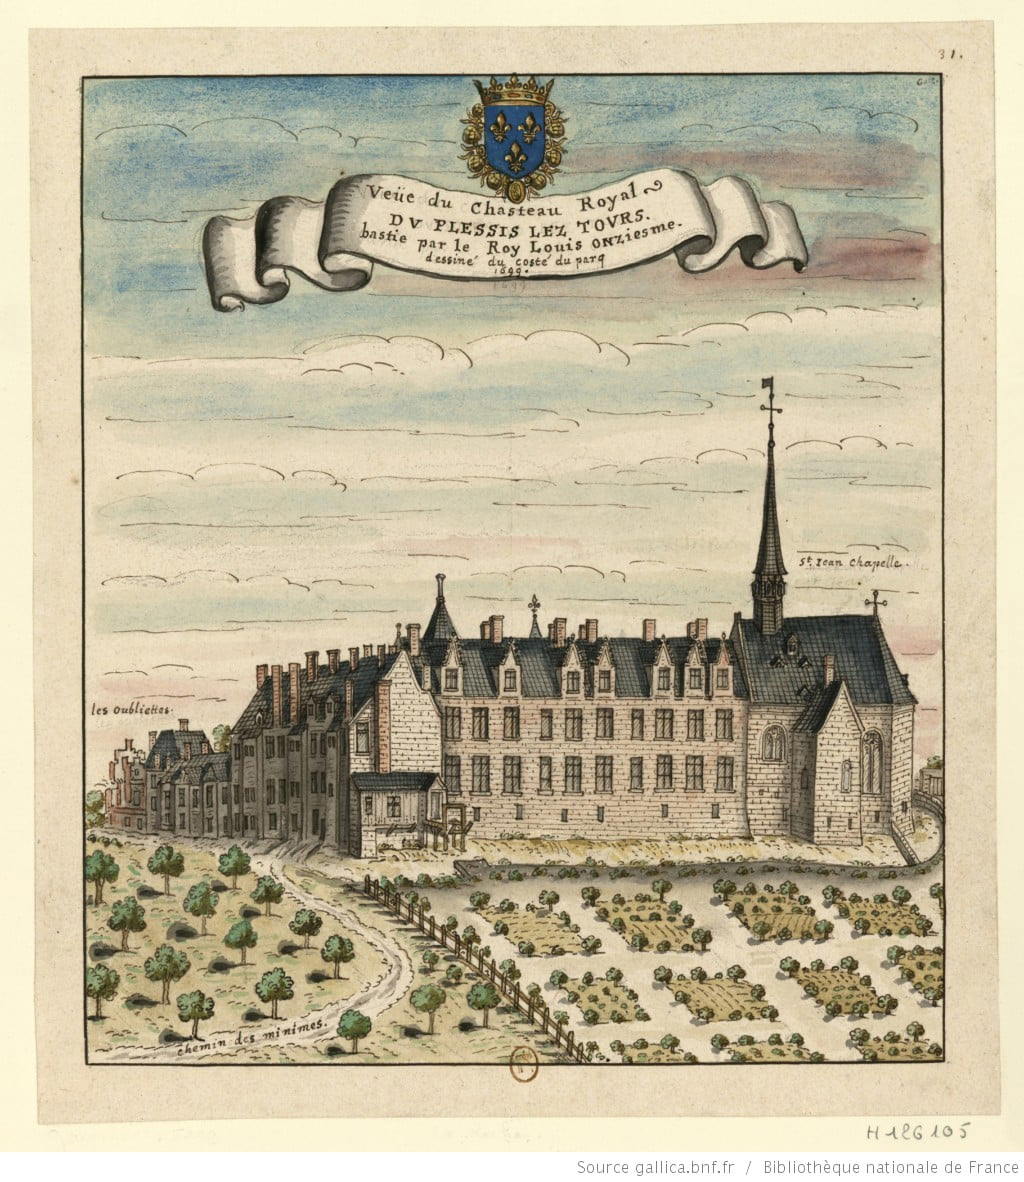 Château de Plessis-lez-Tours